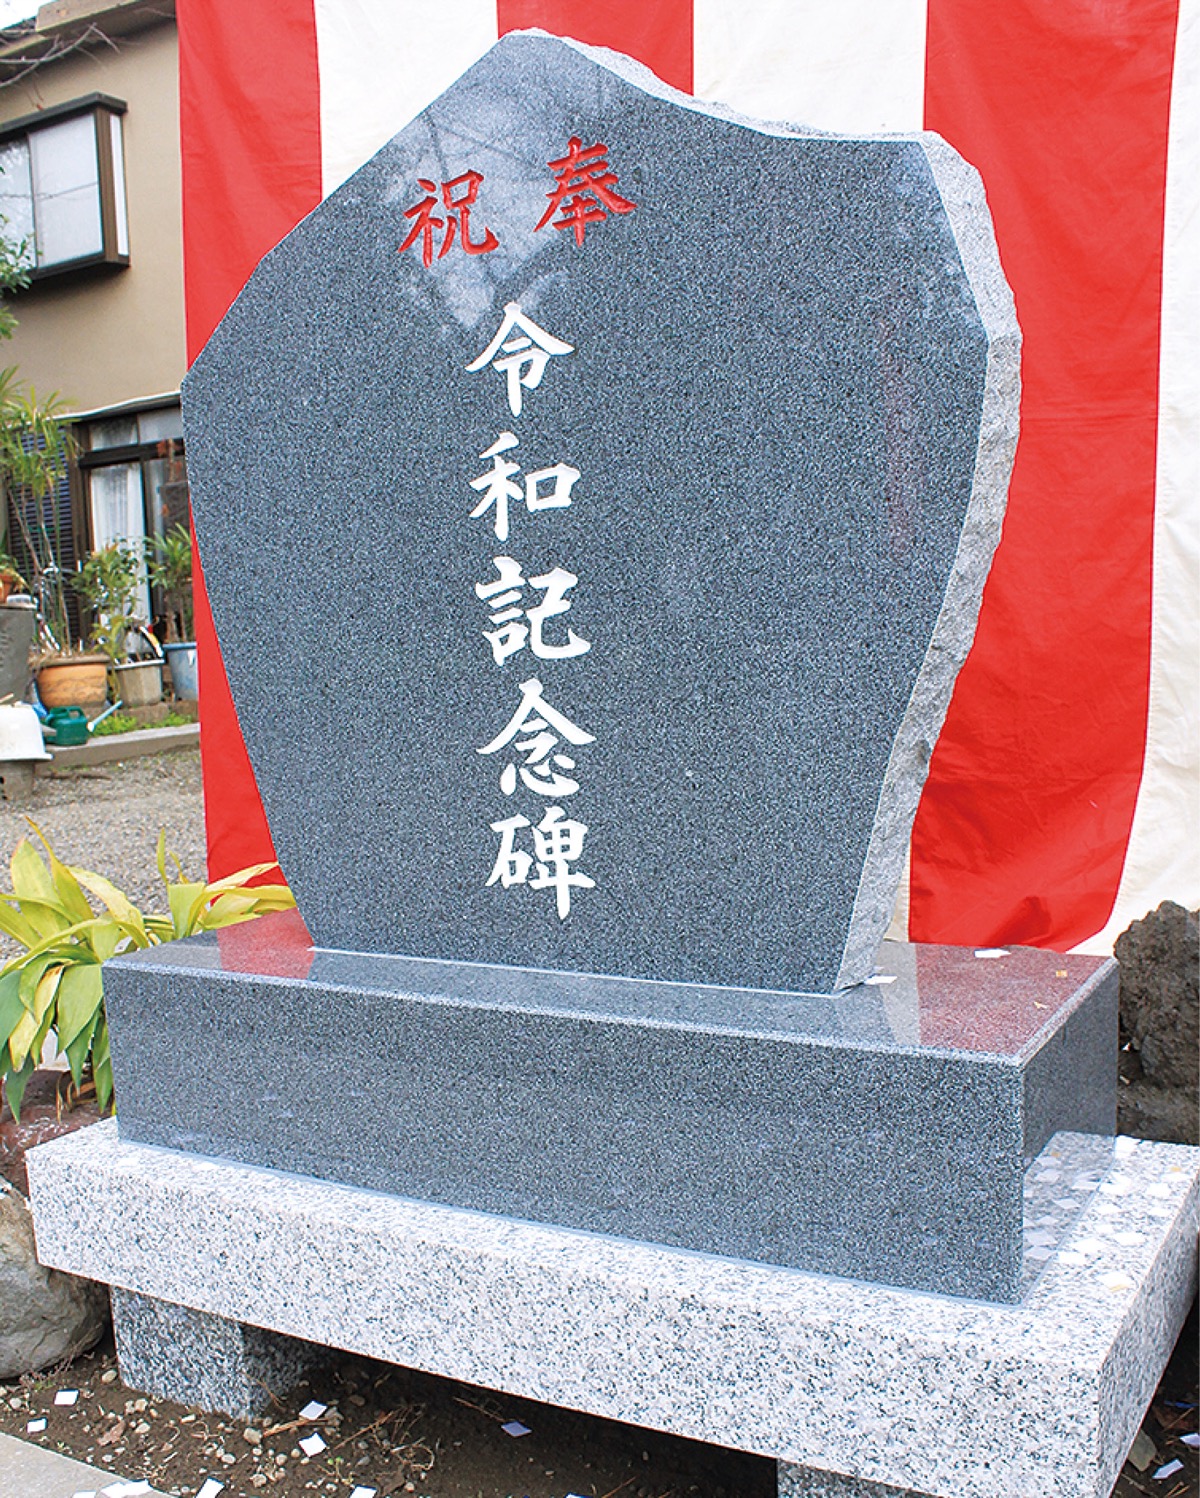 日枝神社に令和記念碑 地域発展の思い込め | 鶴見区 | タウンニュース